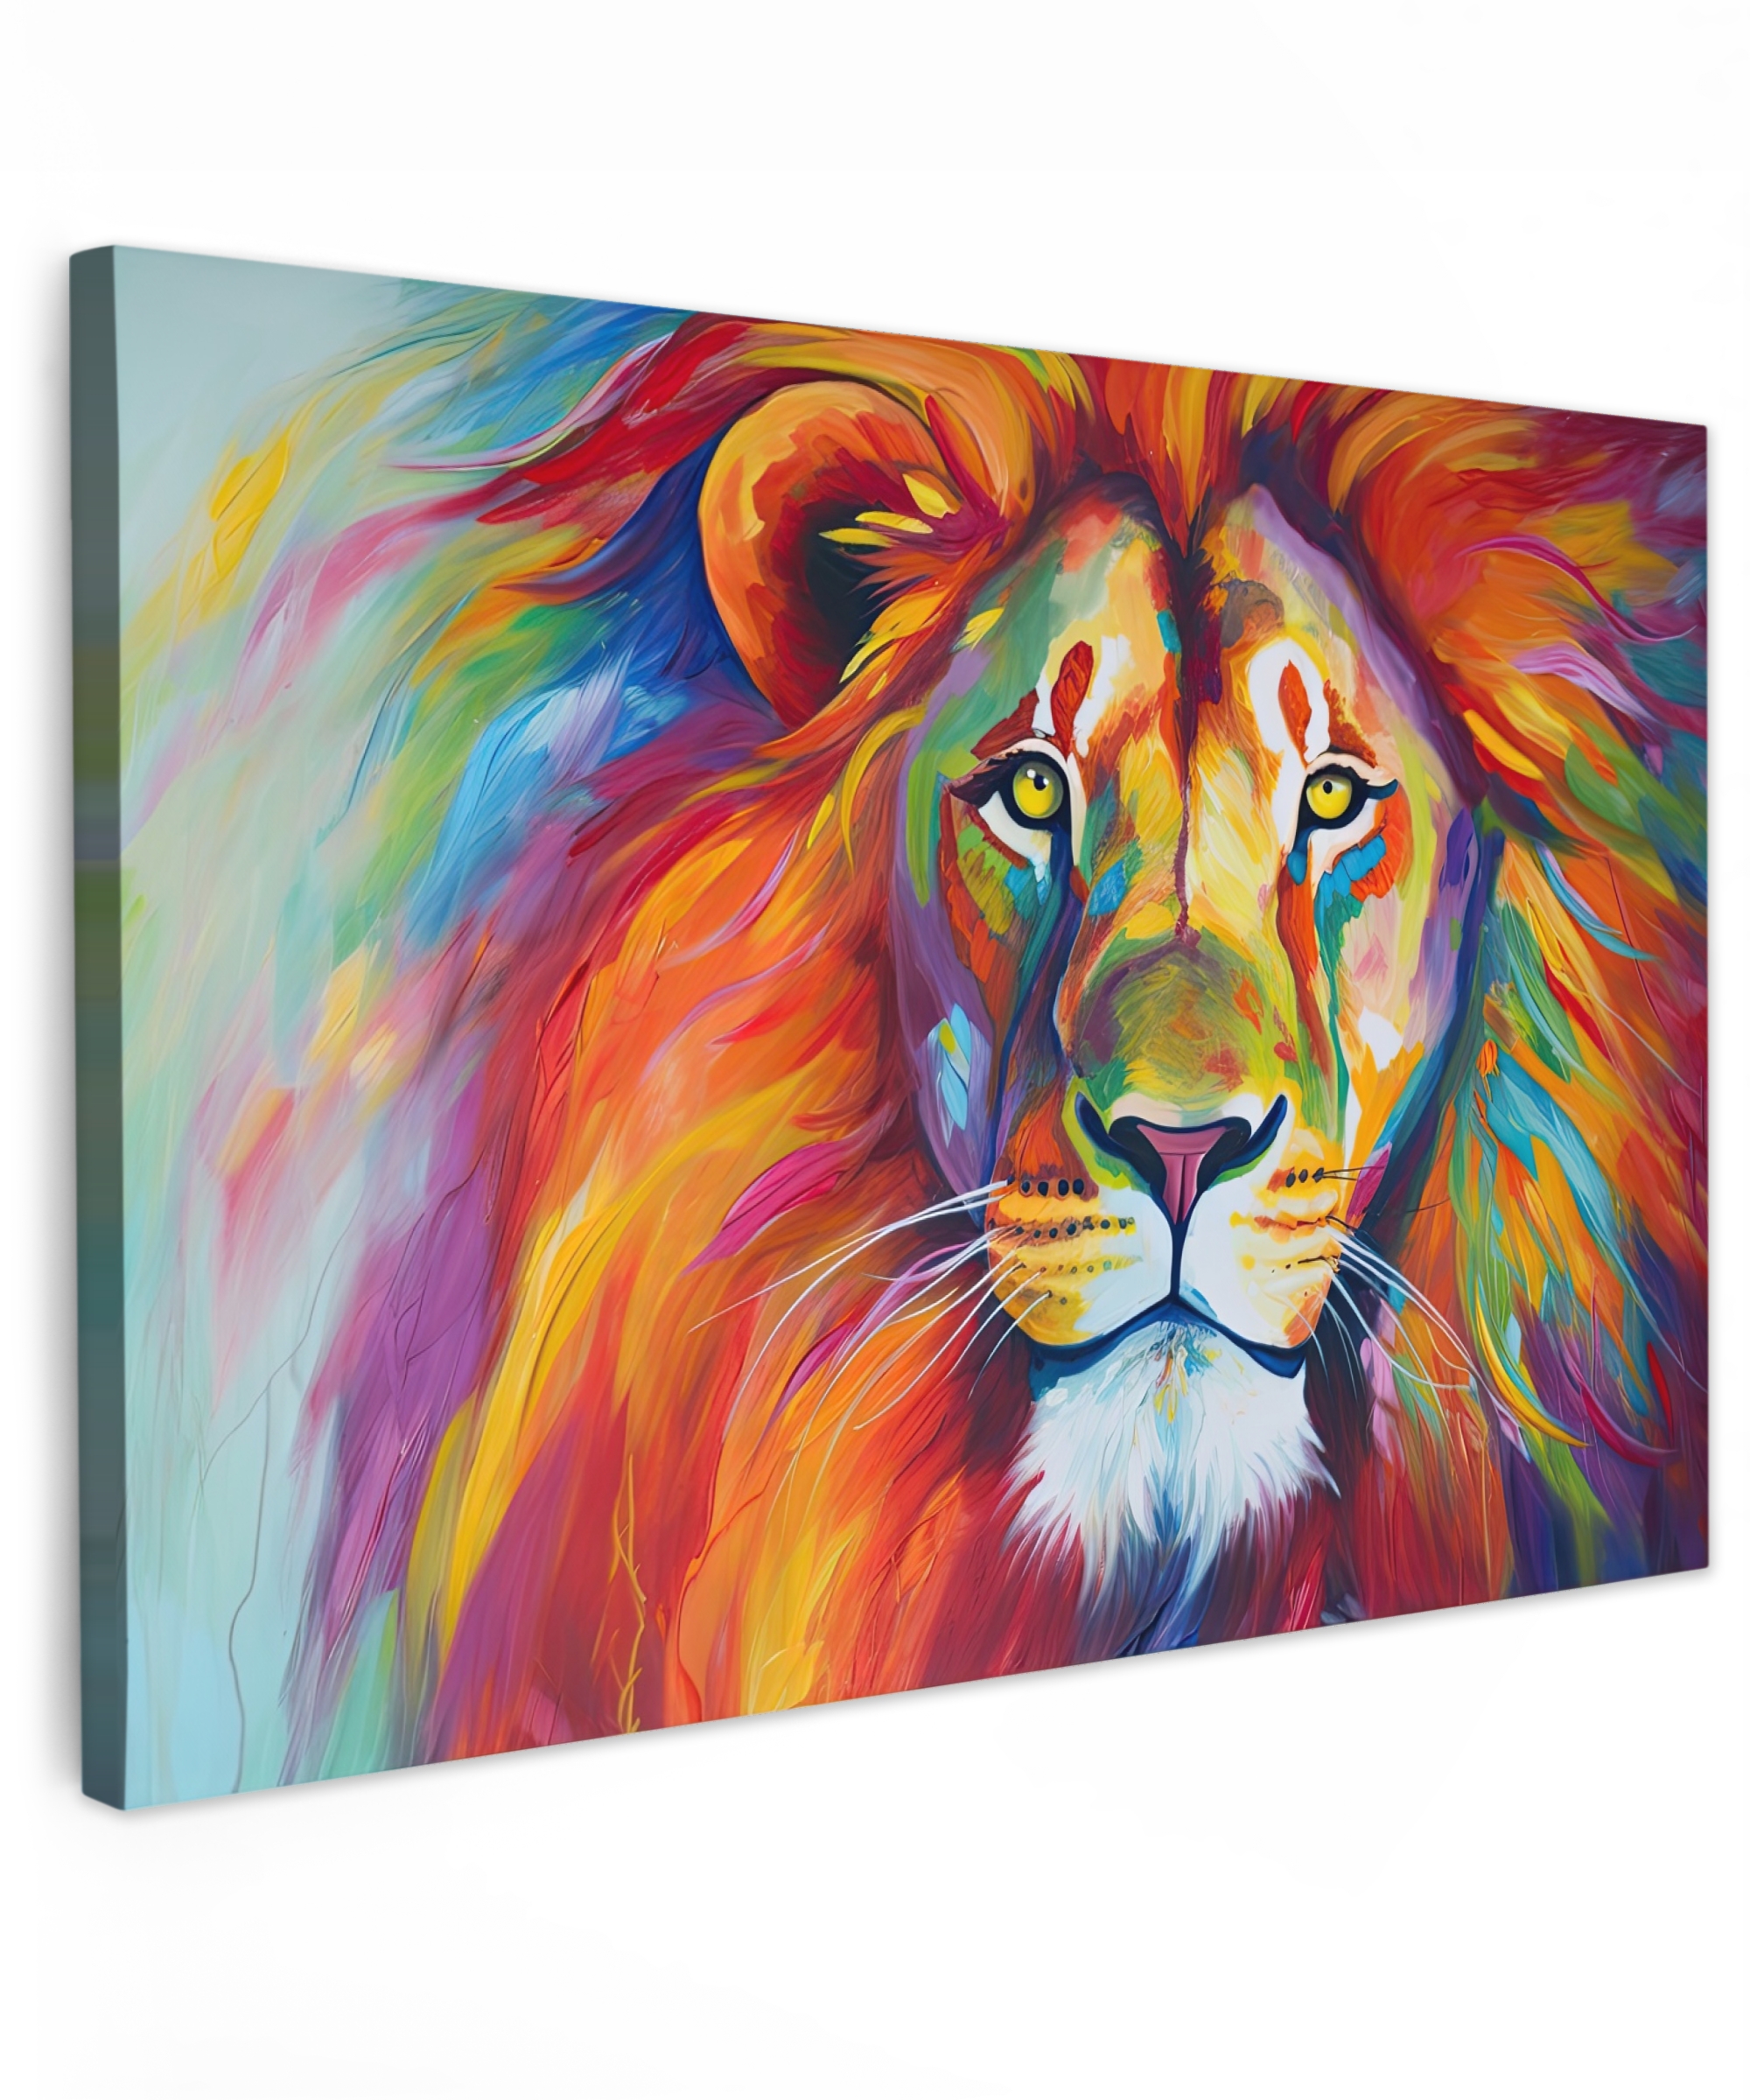 Tableau sur toile - Lion - Animaux - Peinture à l'huile - Arc-en-ciel